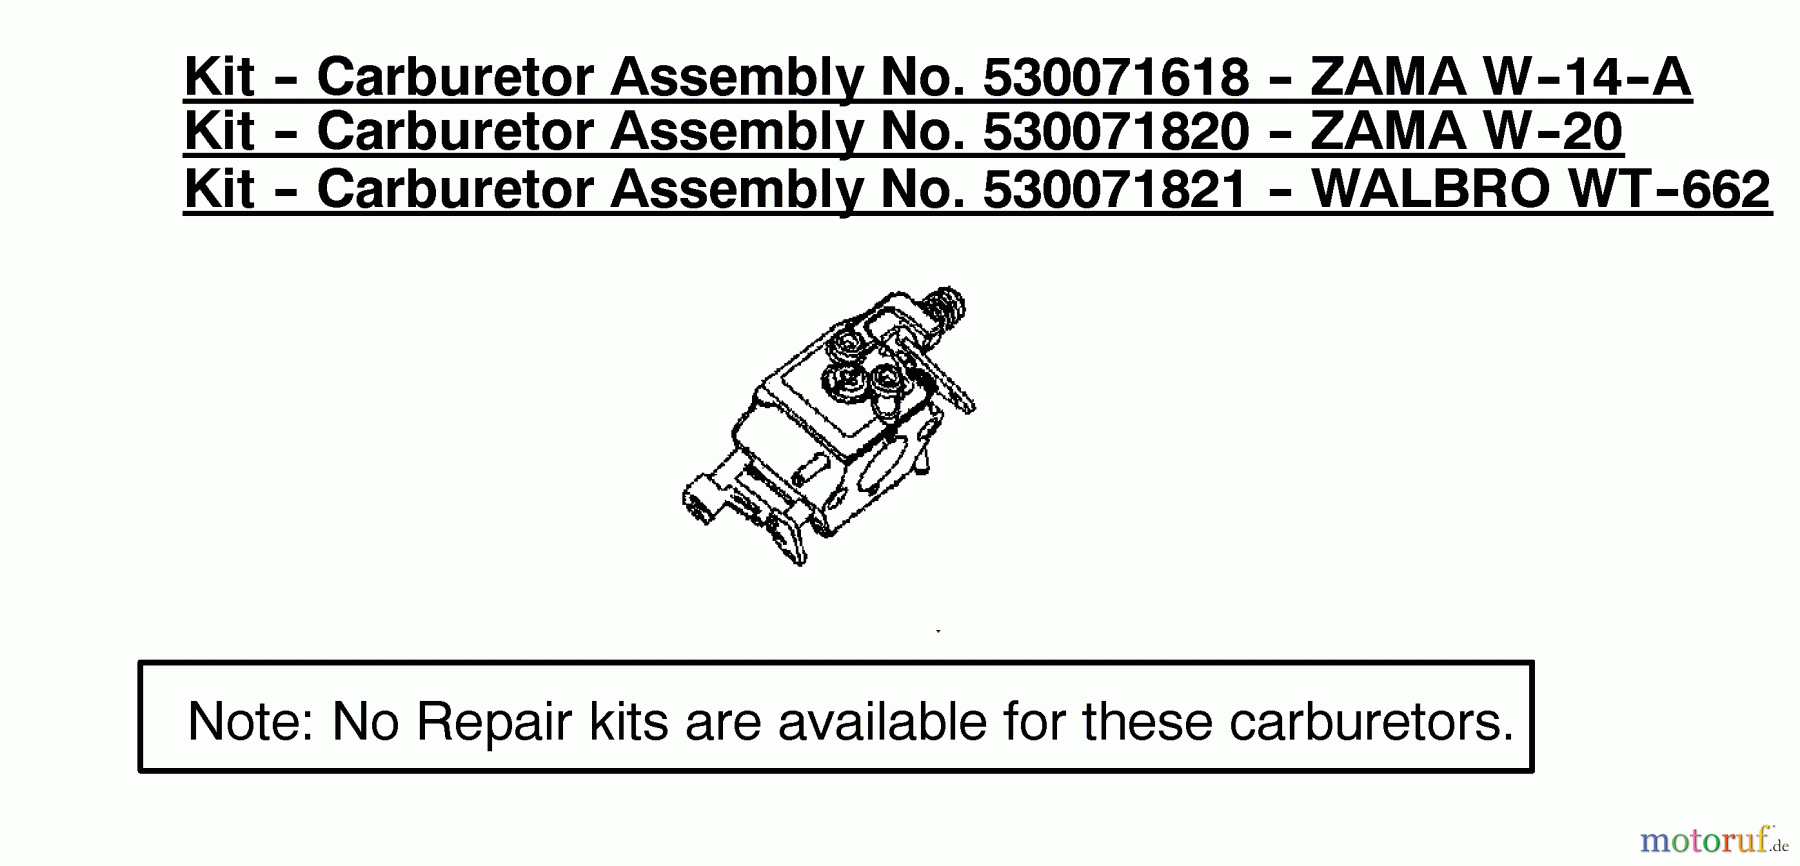  Poulan / Weed Eater Motorsägen 1975LE (Type 2) - Poulan Woodshark Chainsaw Kit-Carburetor Assembly 530071618/530071820/53007182